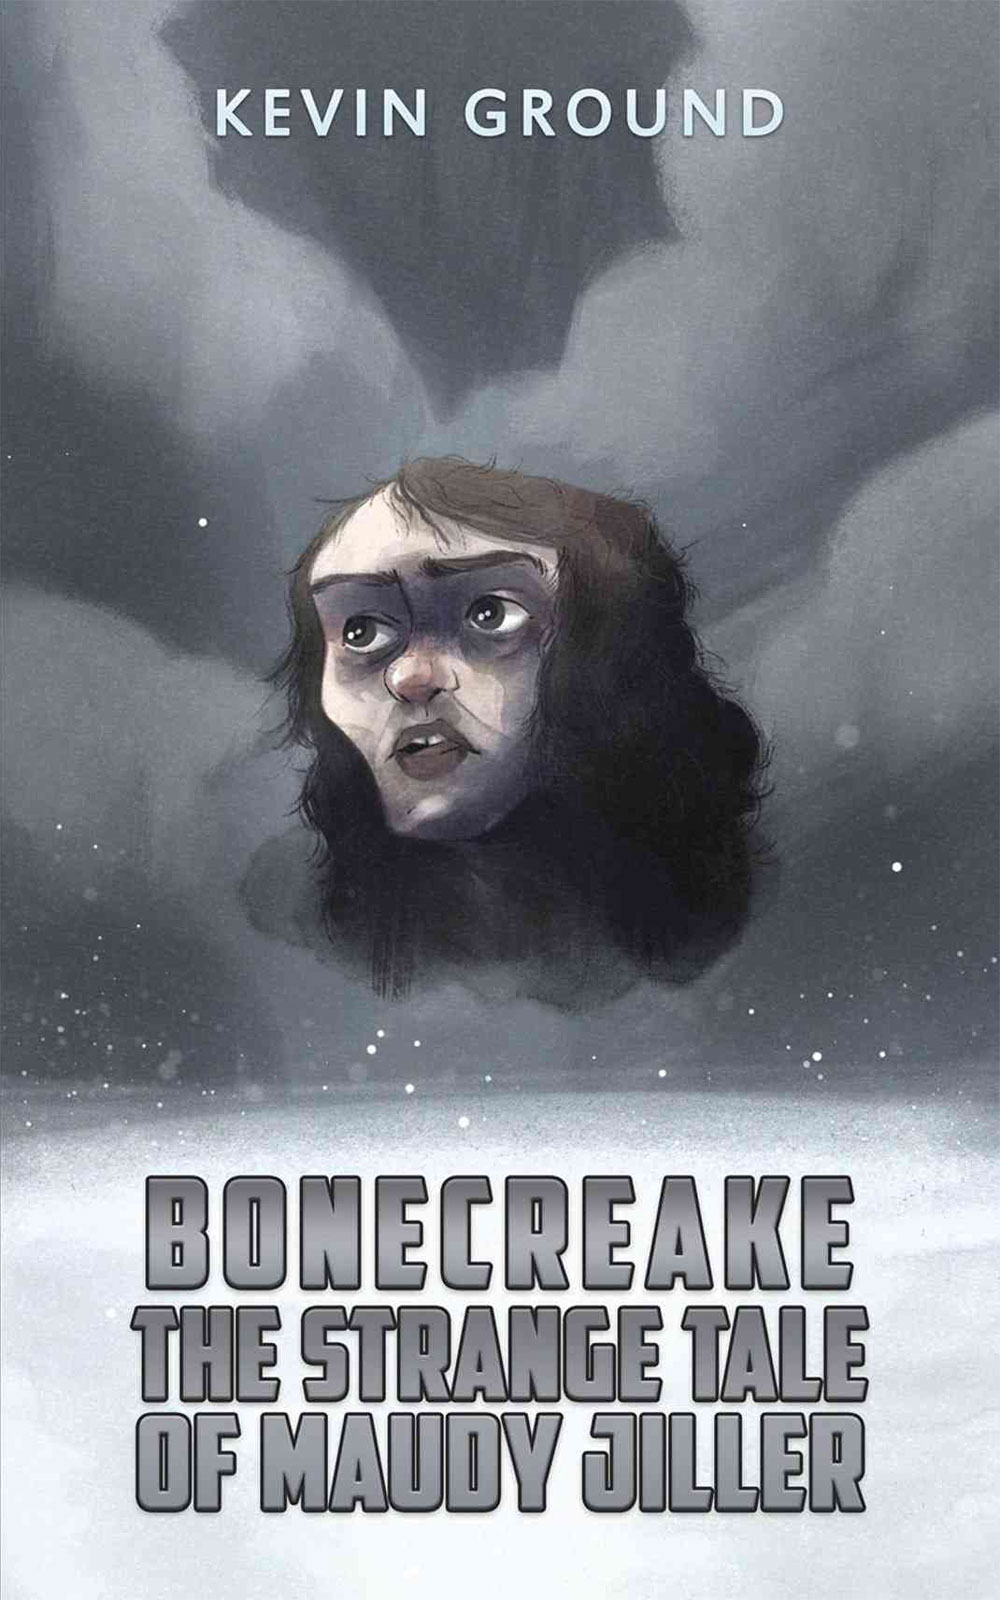 Bonecreake